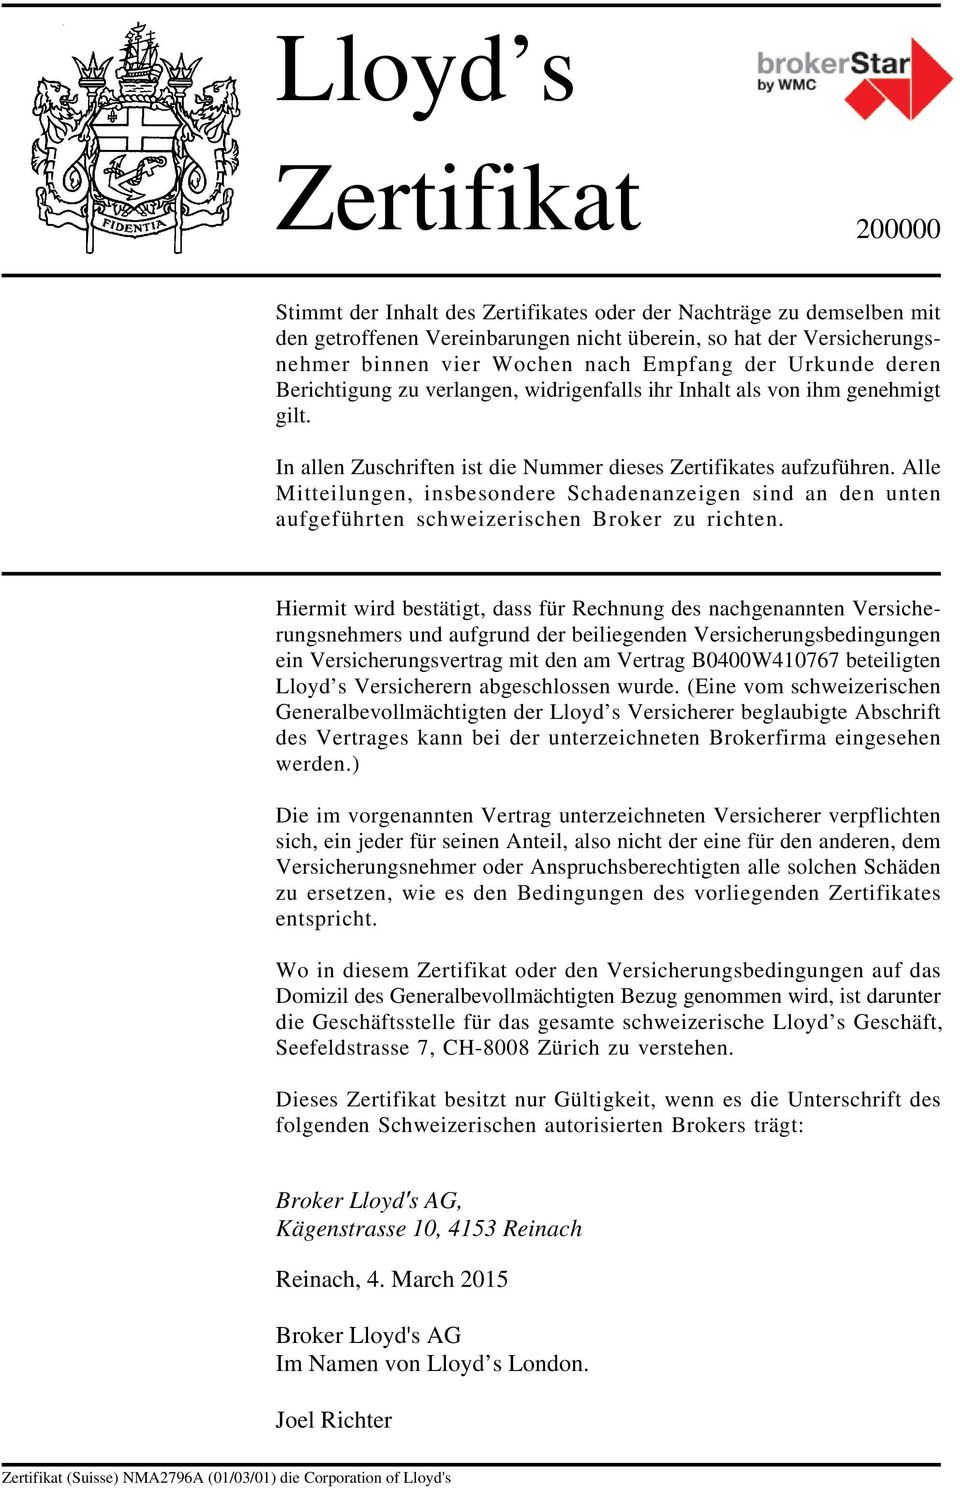 Alle Mitteilungen, insbesondere Schadenanzeigen sind an den unten aufgeführten schweizerischen Broker zu richten.